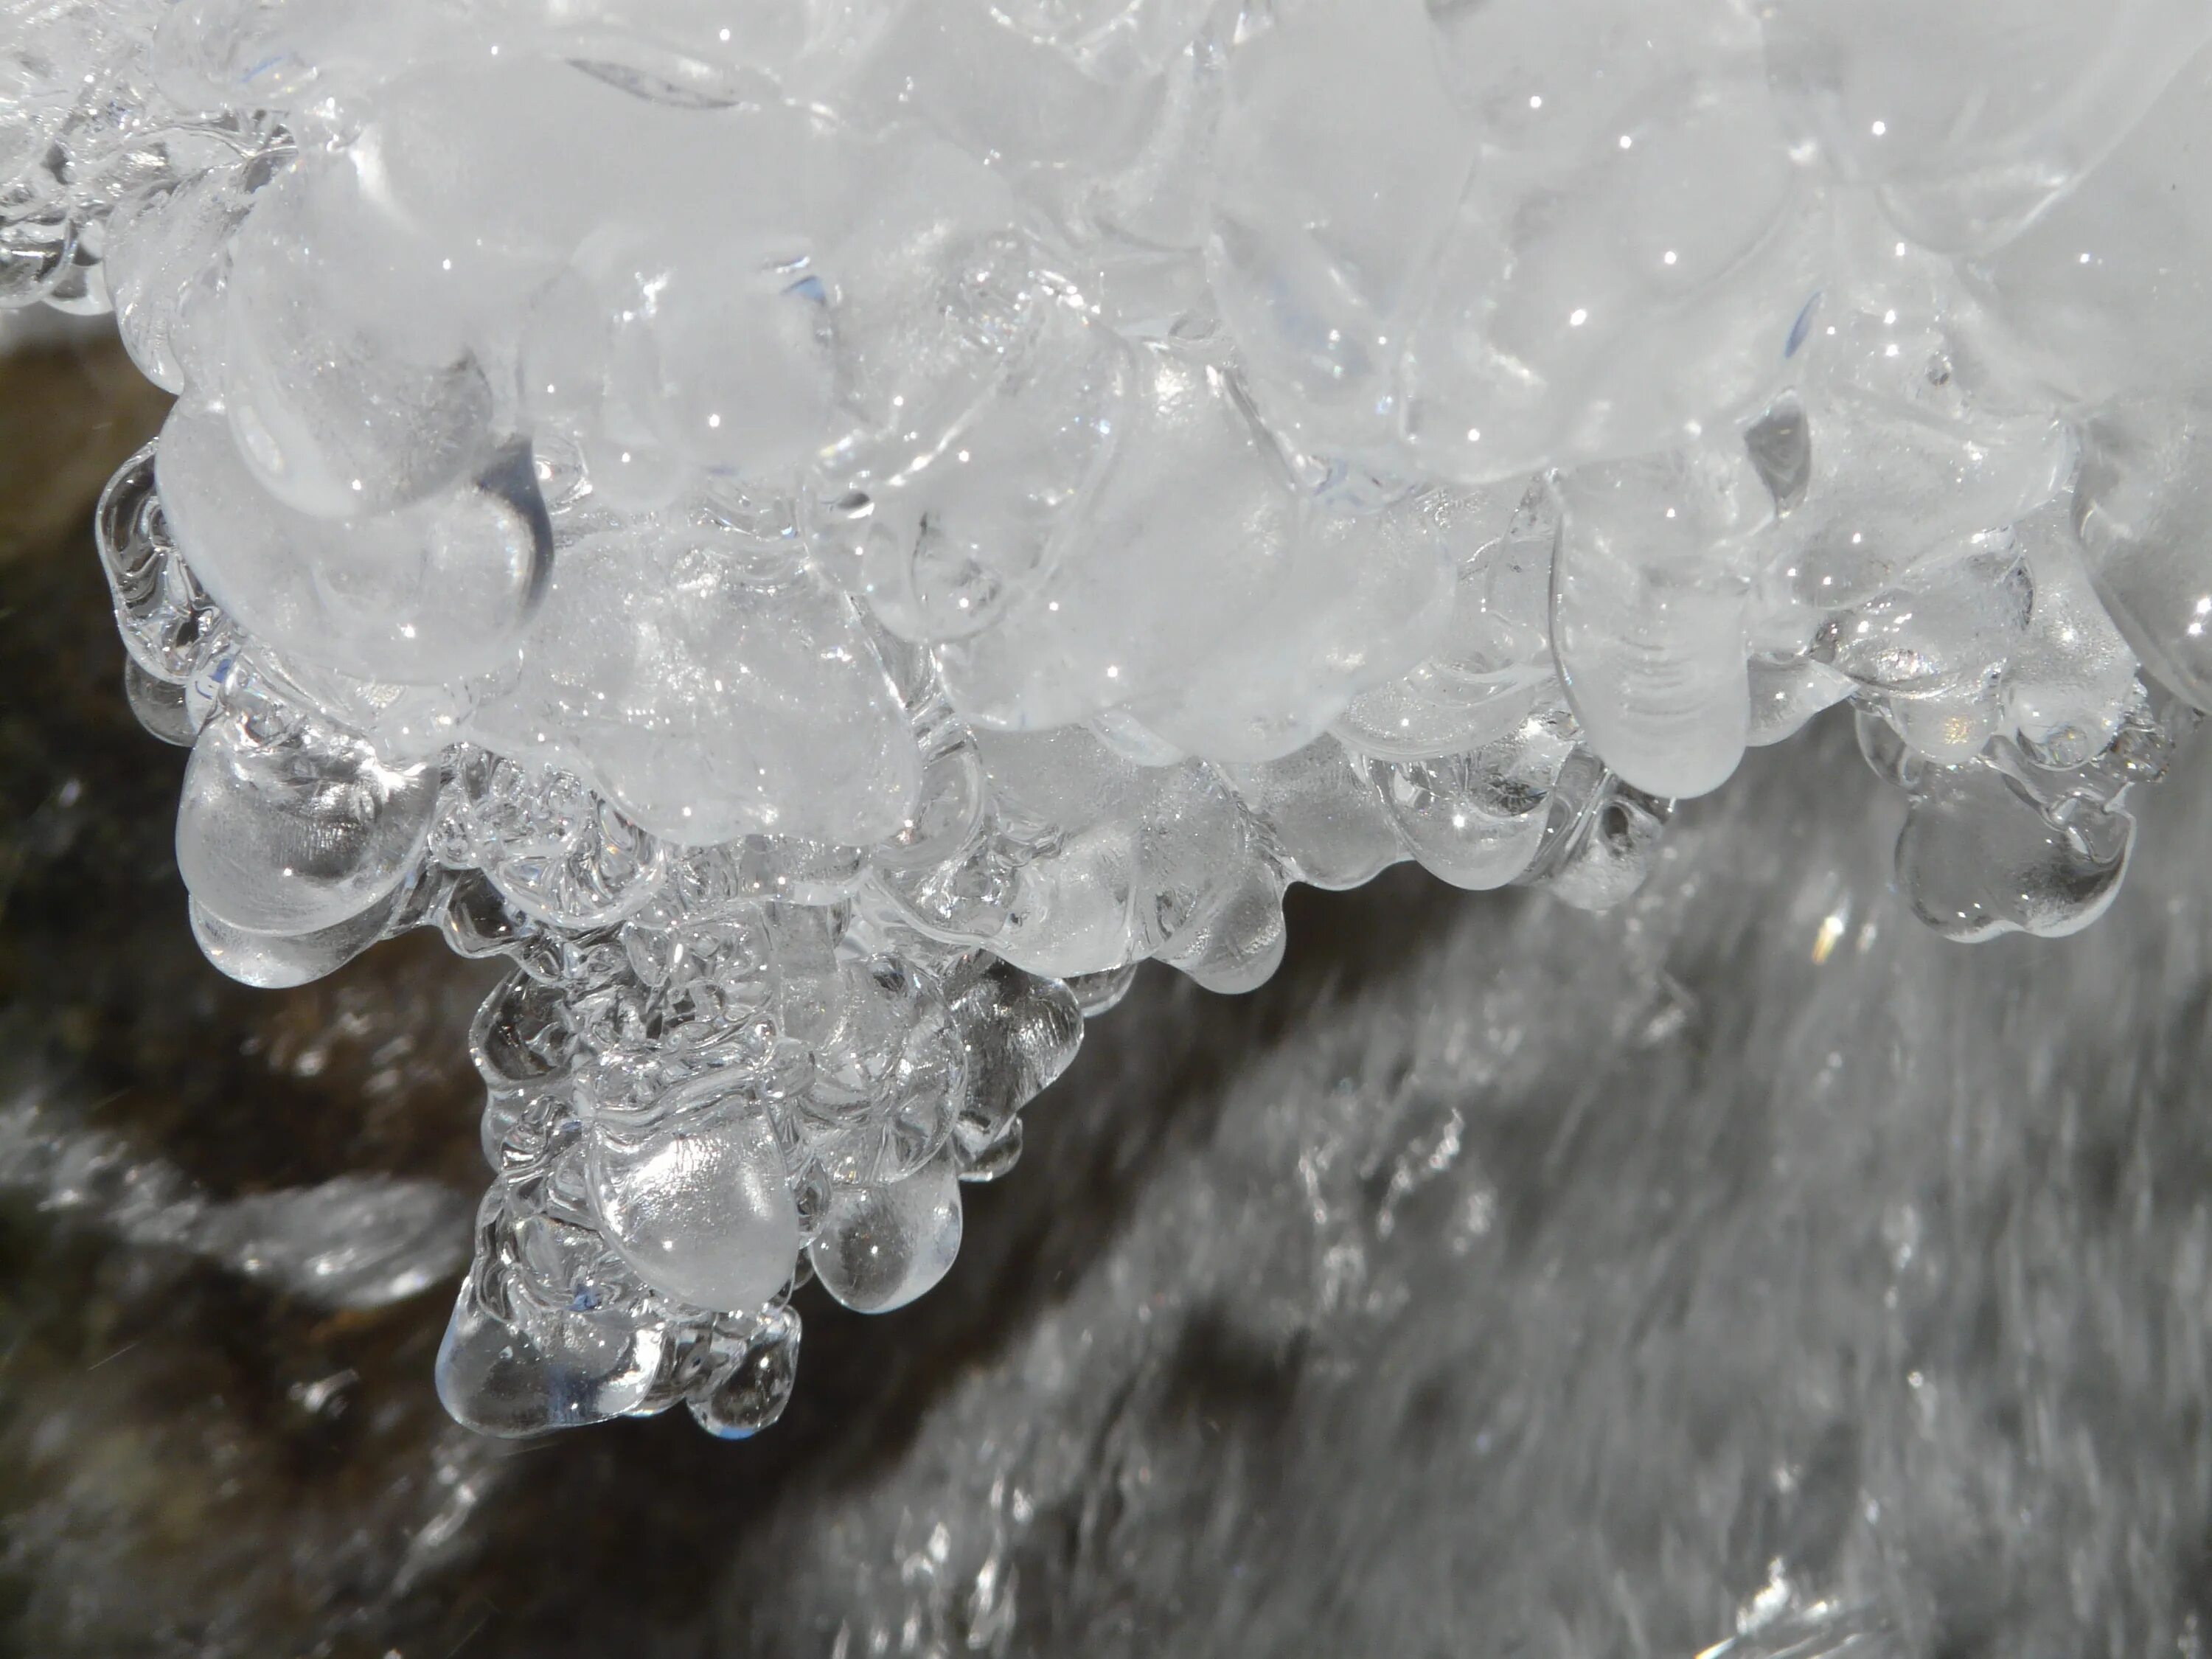 Замерзание воды. Замерзшая вода. Лед замерзшая вода. Кристаллы замерзшей воды.